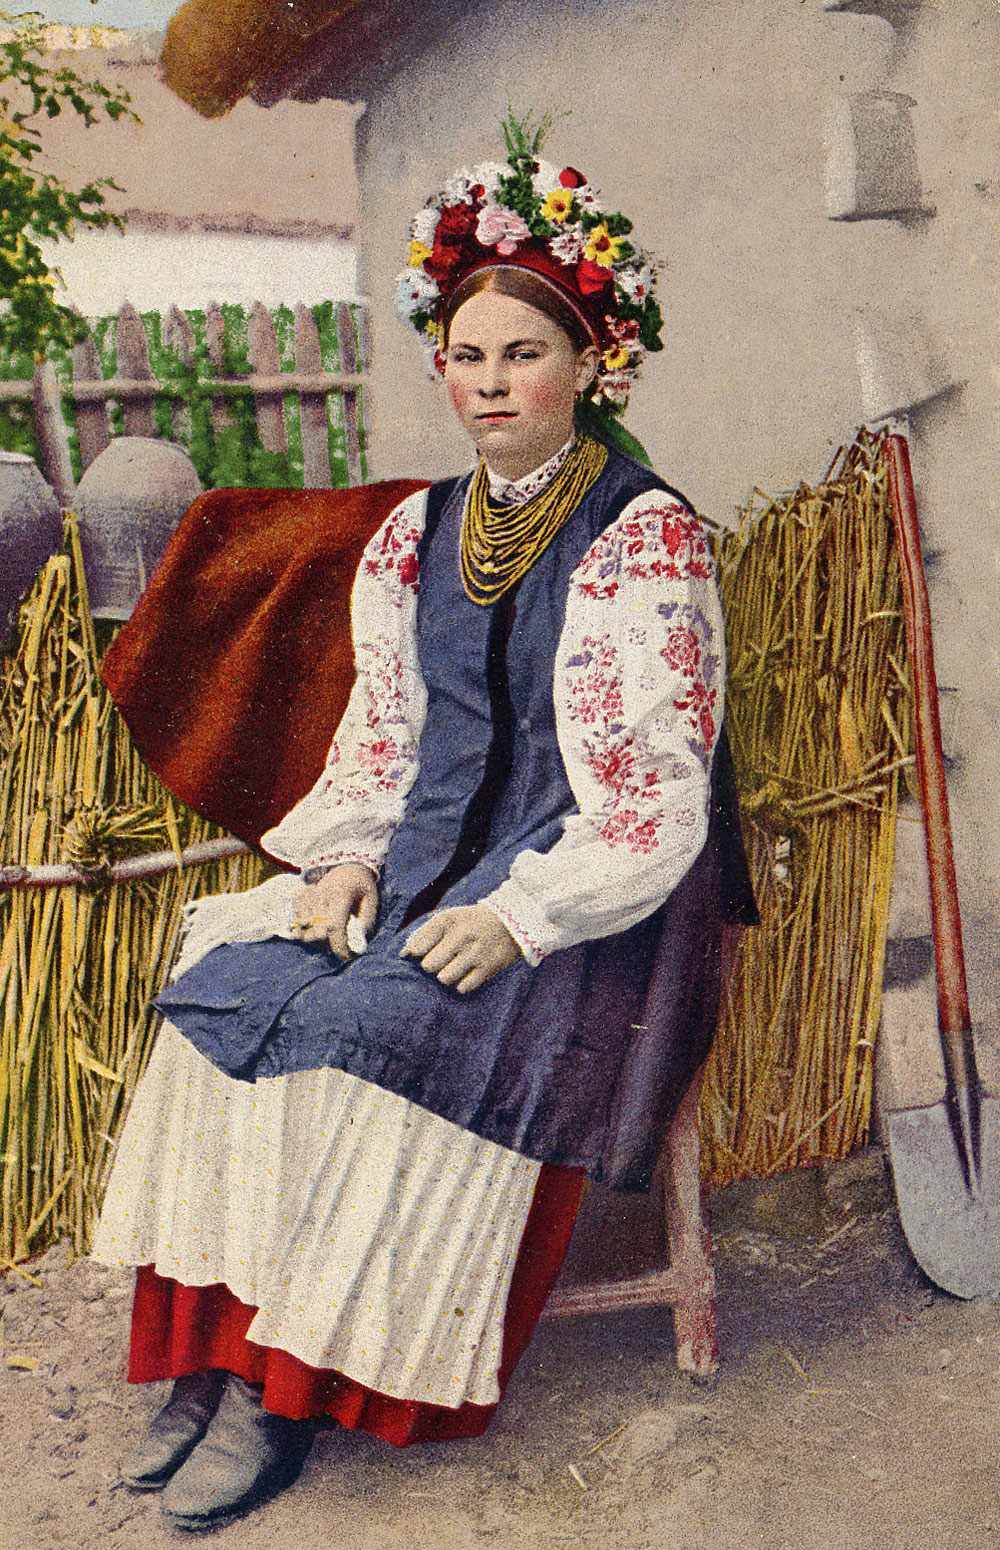 衣服標本家 長谷川 世紀初頭 ウクライナの民族衣装 ウクラニアン コルセット を紹介します 花柄の刺繍が施されたシャツ ヴィシヴァンカ は有名な民族衣装です 私はシャツの上に羽織っている 不思議な構造のベスト に惹かれました 実物を見てみると